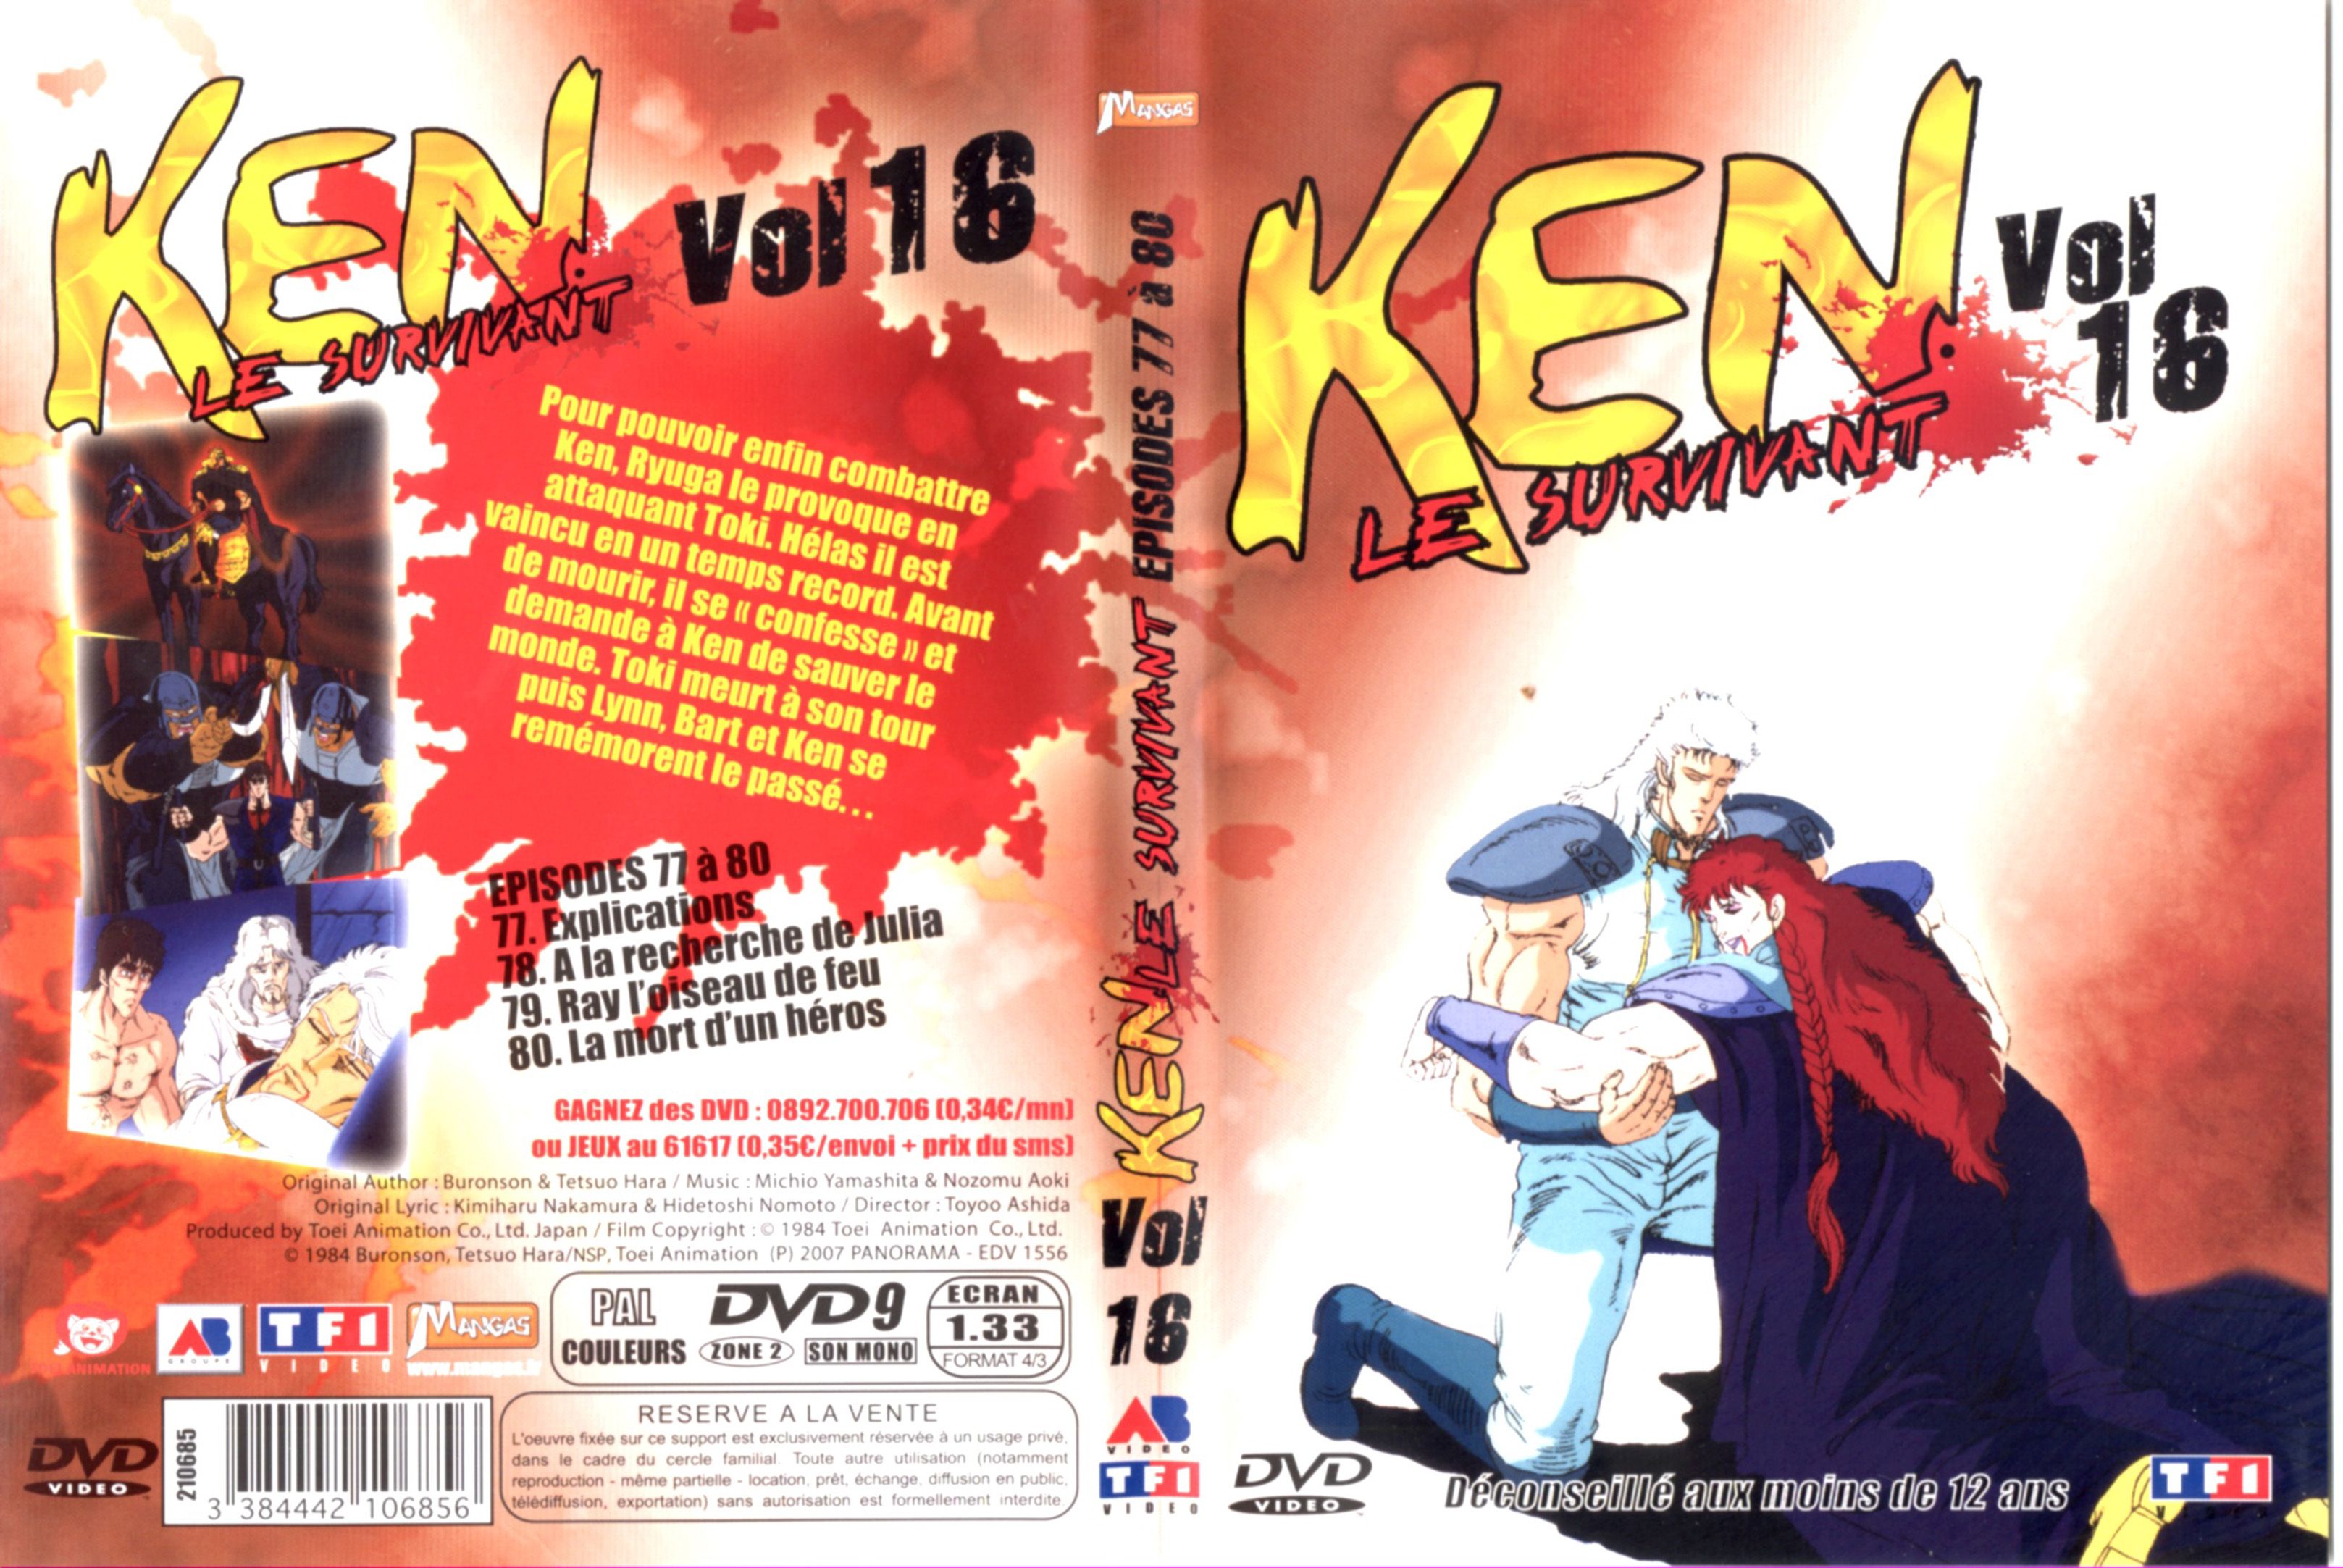 Jaquette DVD Ken le survivant vol 16